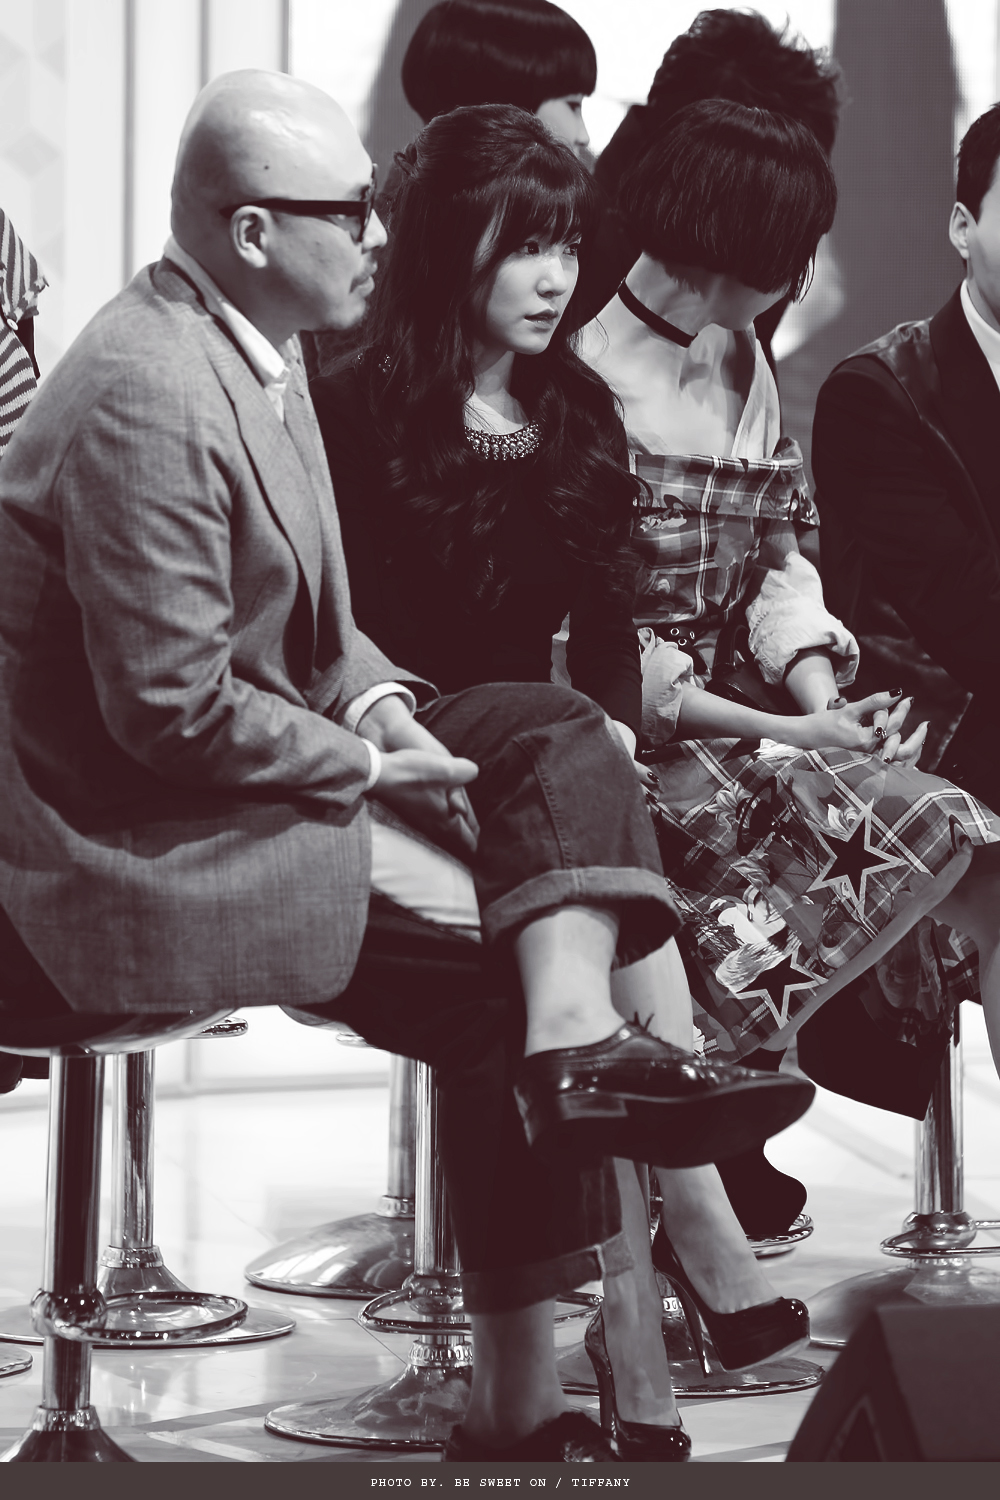 [PIC][16-10-2013]Tiffany xuất hiện tại buổi họp báo ra mắt chương trình "Fashion King Korea" vào trưa nay 217C6F4B526225683D57B6